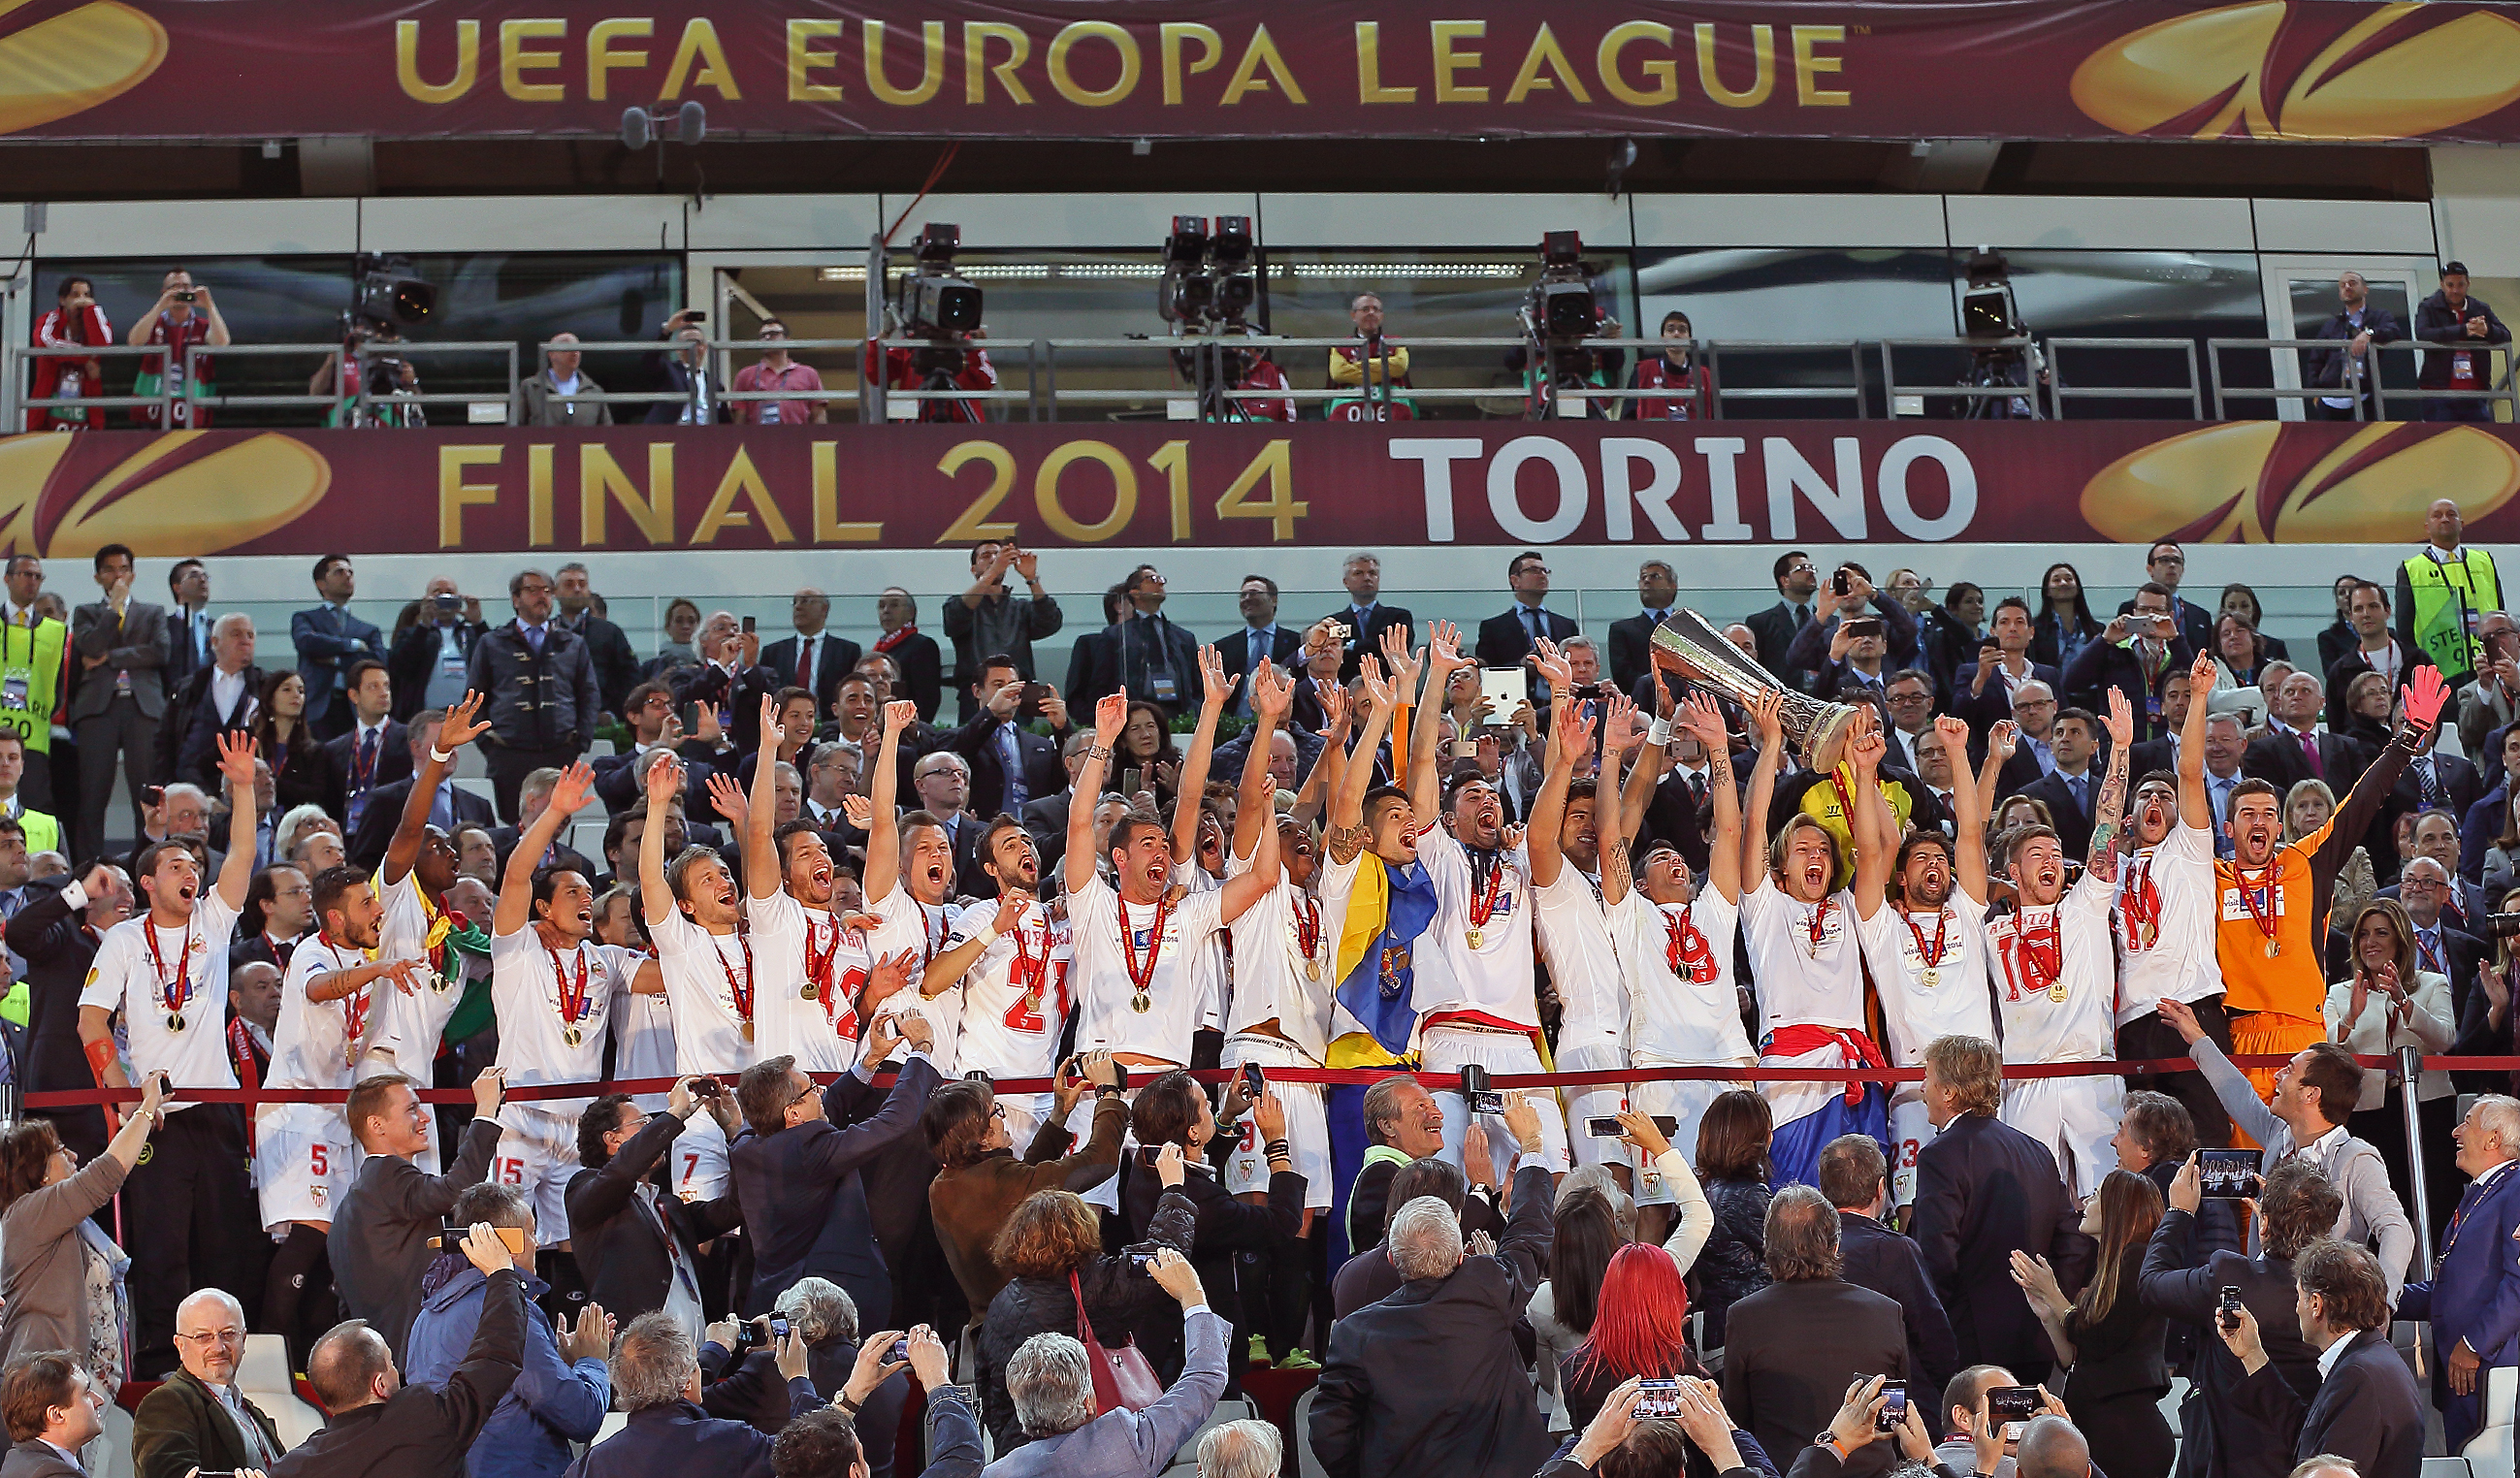 El Sevilla FC levanta la Europa League en Turín